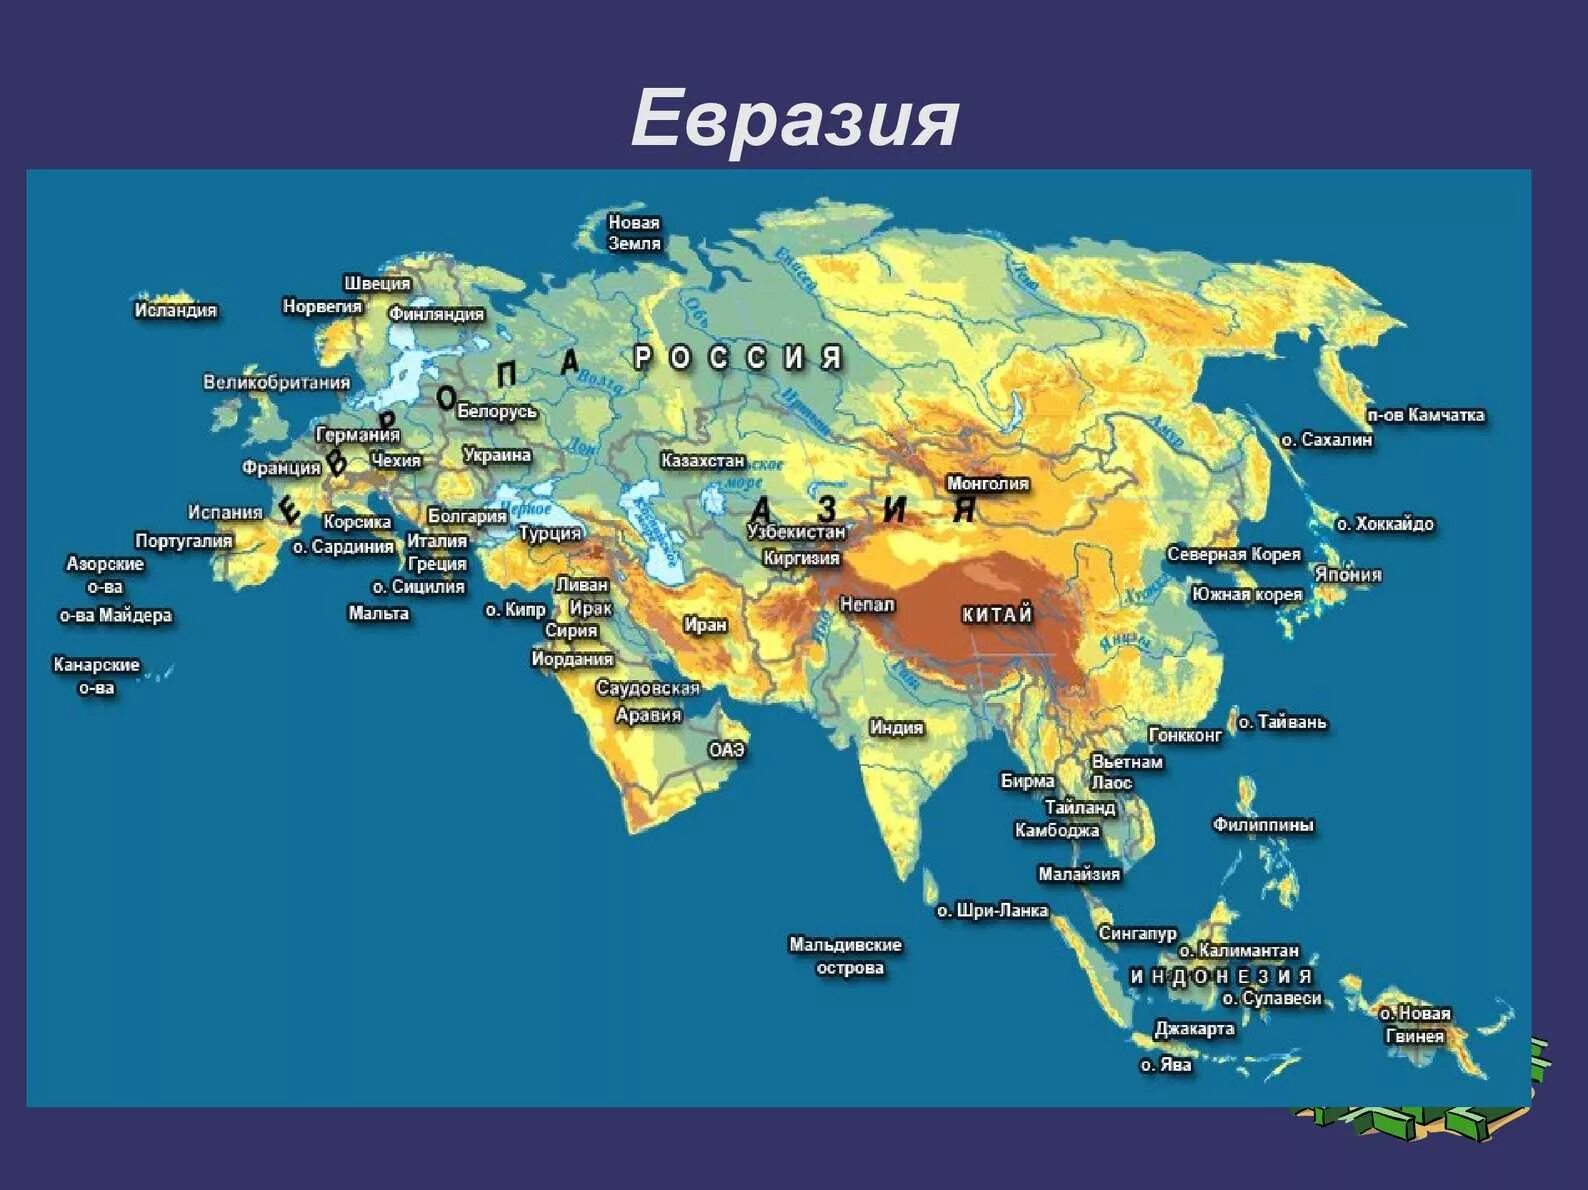 Название материка евразия. Карта Евразии 20 века. Материк Евразия на карте. Острова Евразии на карте.